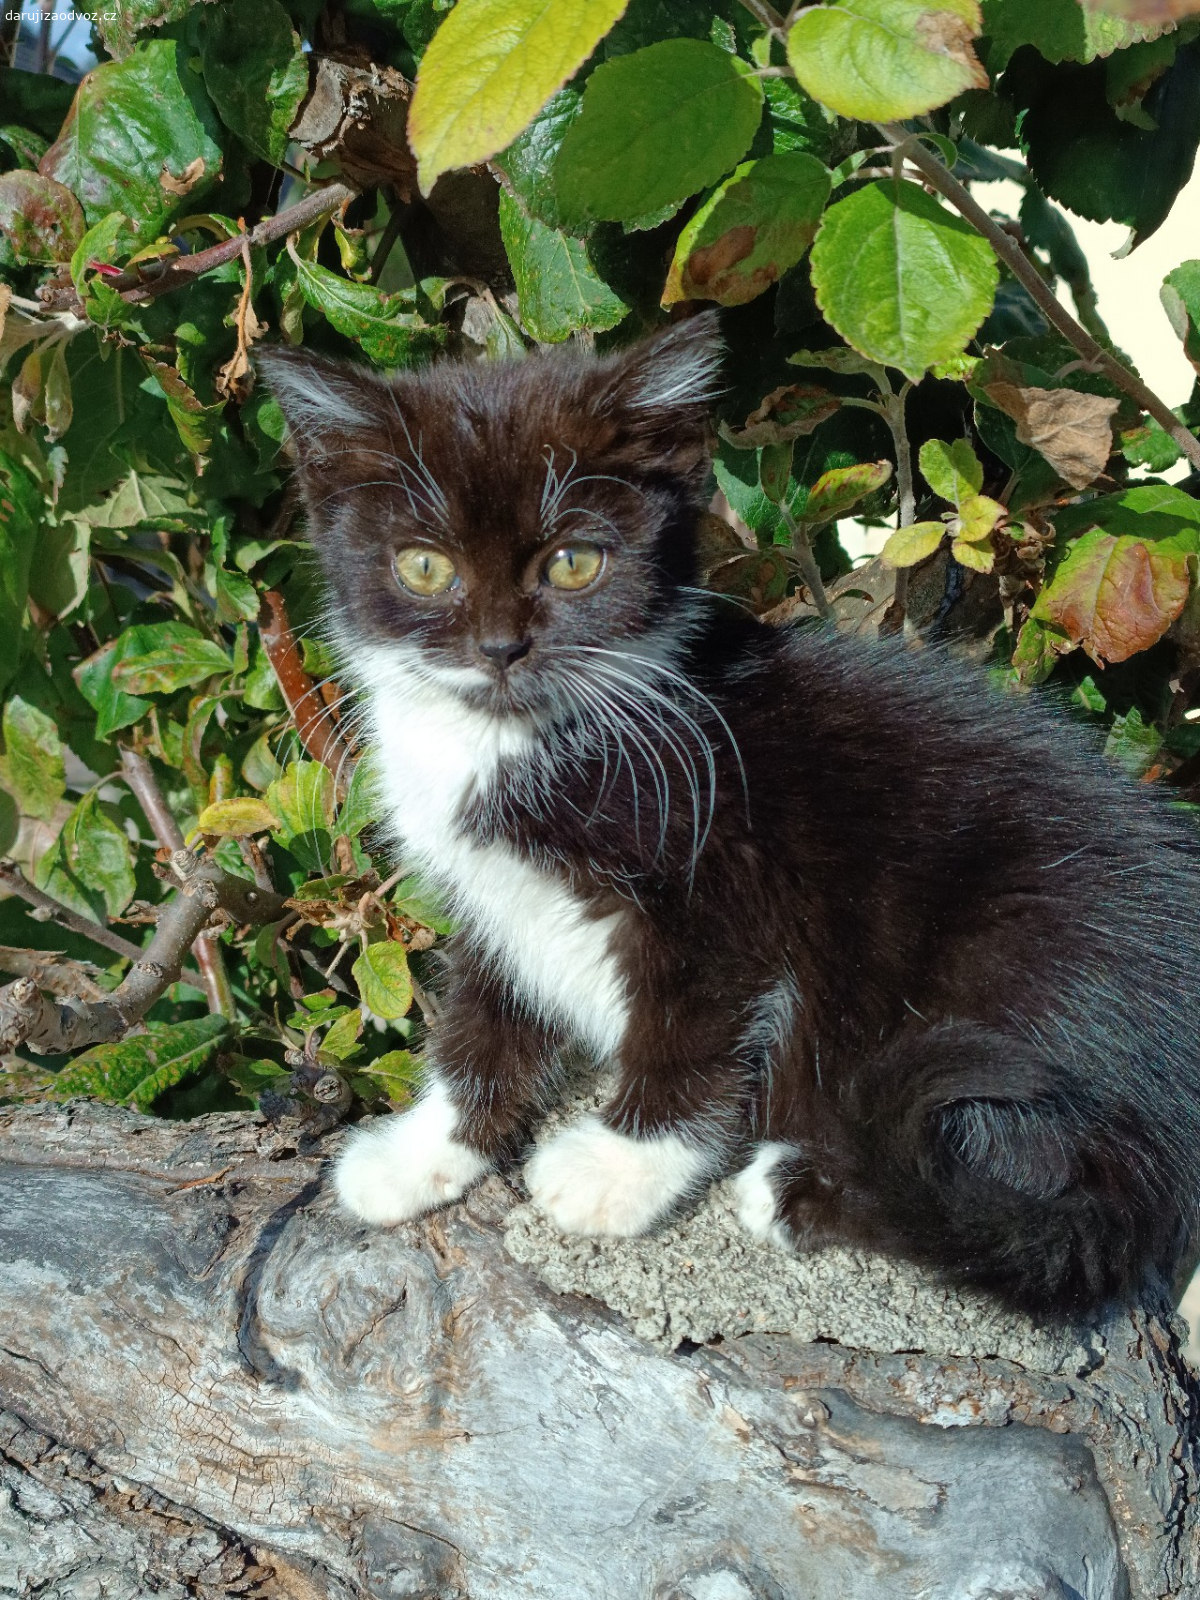 Koťata. Dvě krásná koťátka ve věku necelých 2,5 měs hledají nový domov. Černobílá je kočička, barevný je kocourek (boky má jako mramorová bábovka a bílá špička ocasu). Naučená na končící WC.
Vyzvednutí-Praha Cholupický vrch.